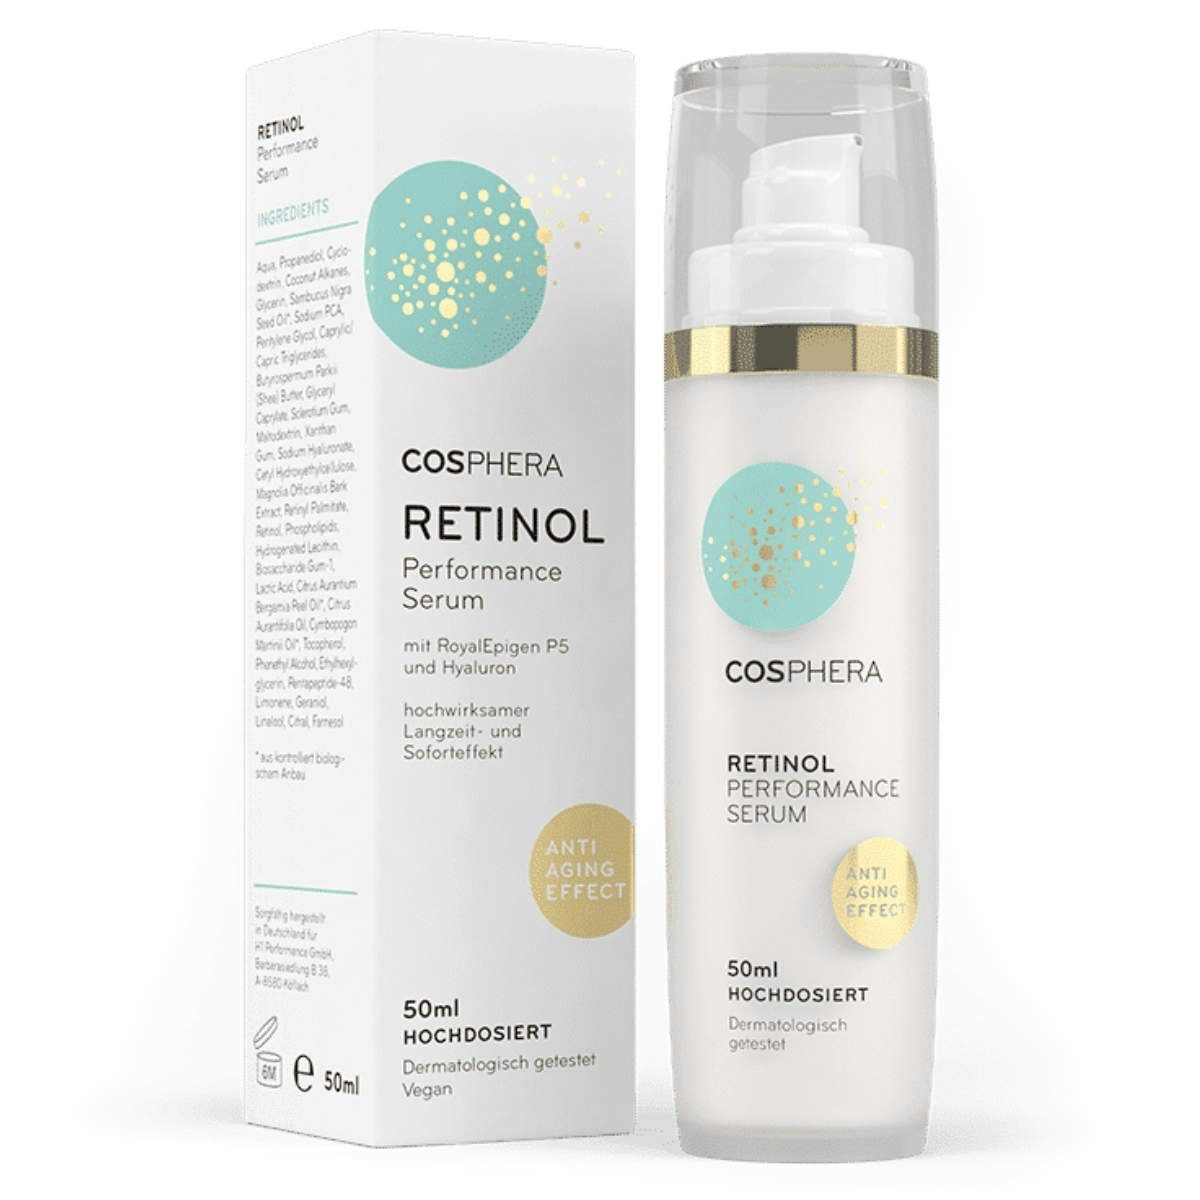 Cosphera Anti-Aging-Creme Cosphera Retinol Performance Serum 50 ml